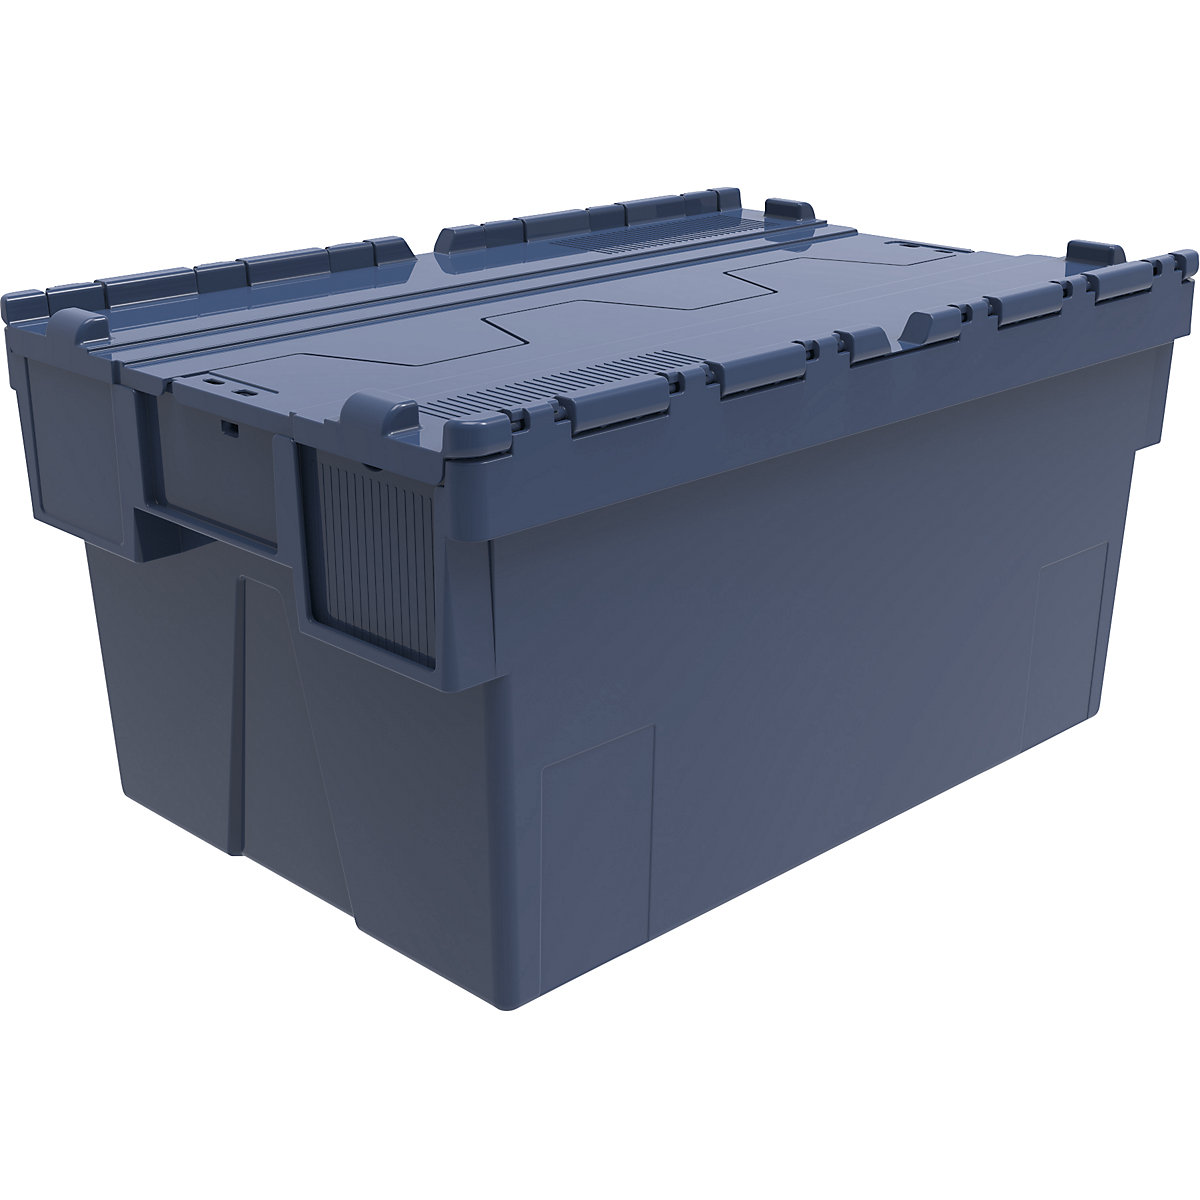 Többször használható rakásolható tároló, h x szé x ma 600 x 400 x 310 mm, cs. e. 5 db, kék színben, kék fedéllel